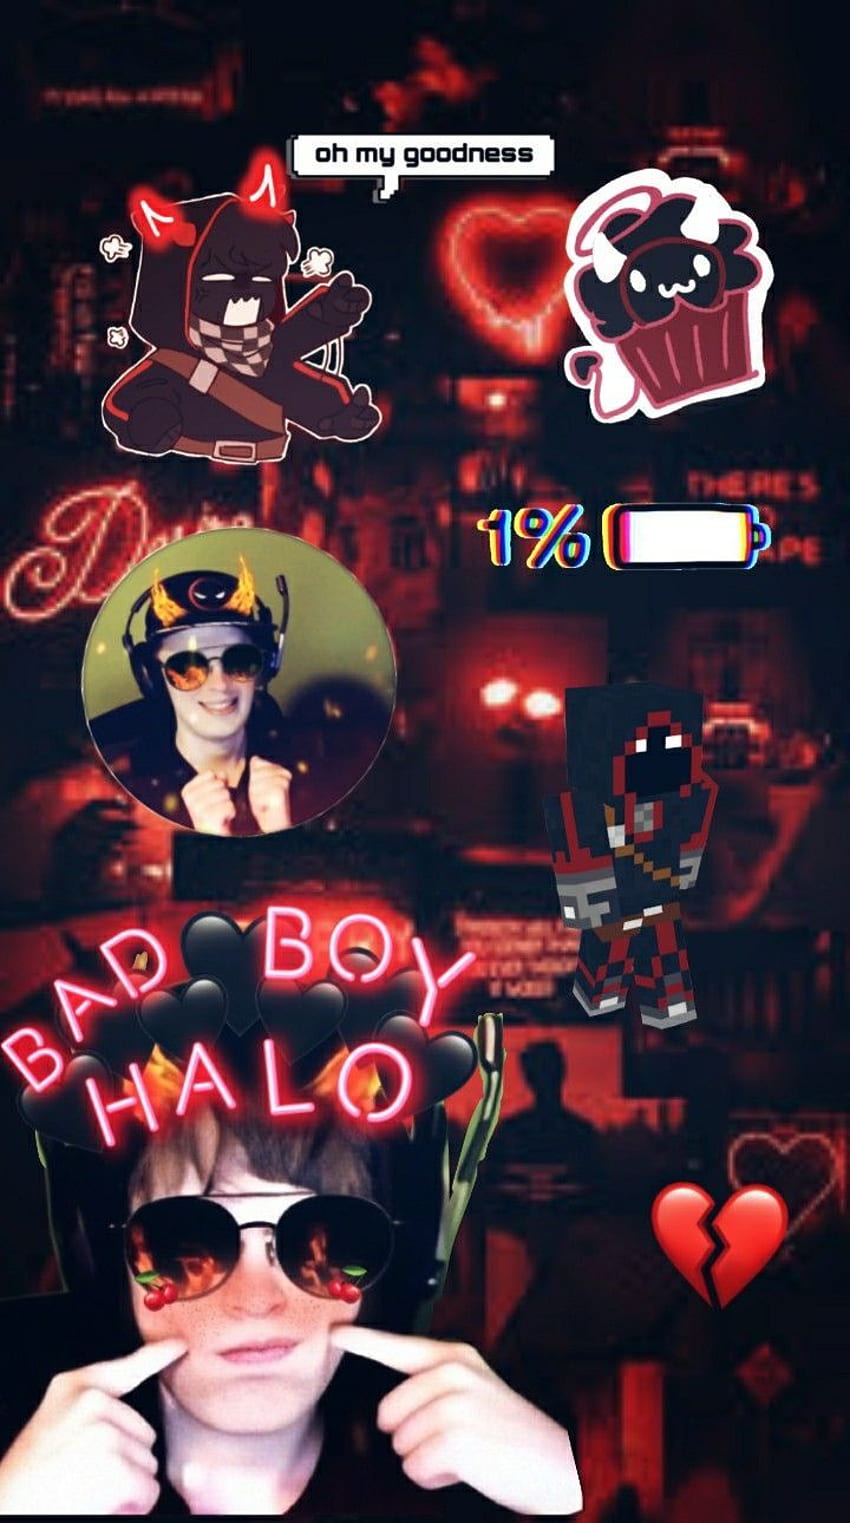 BadBoyHalo. My dream team, Dream team, Team HD phone wallpaper